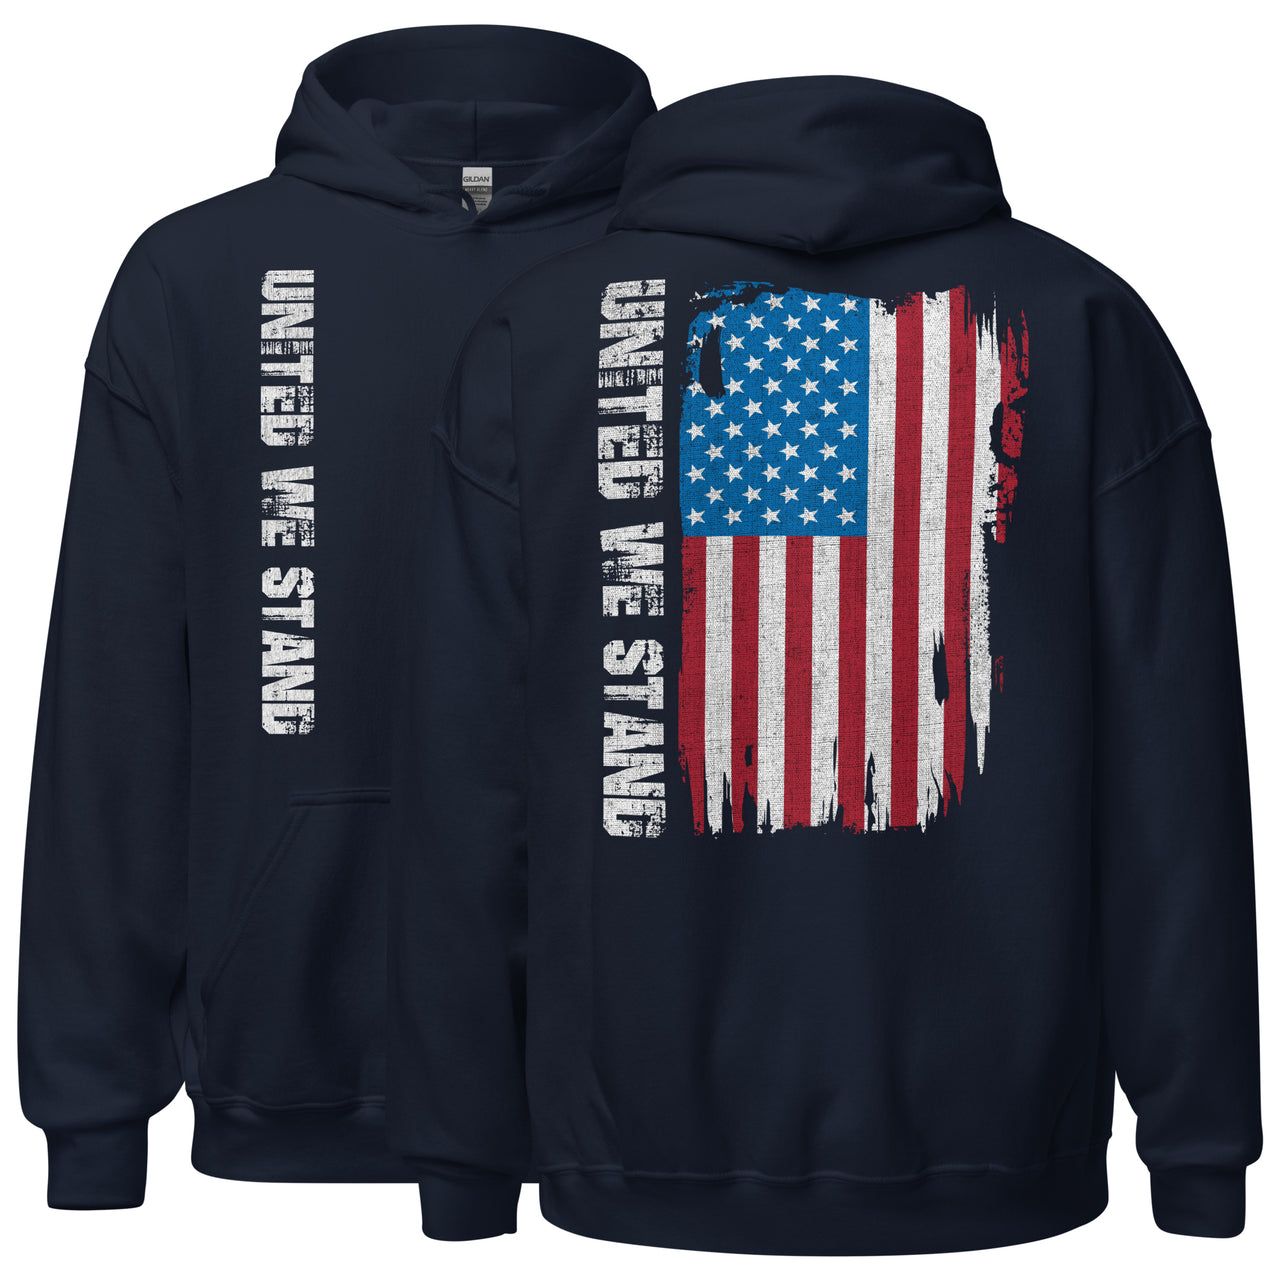 United We Stand Full Color American Flag Hoodie Sweatshirt in navy